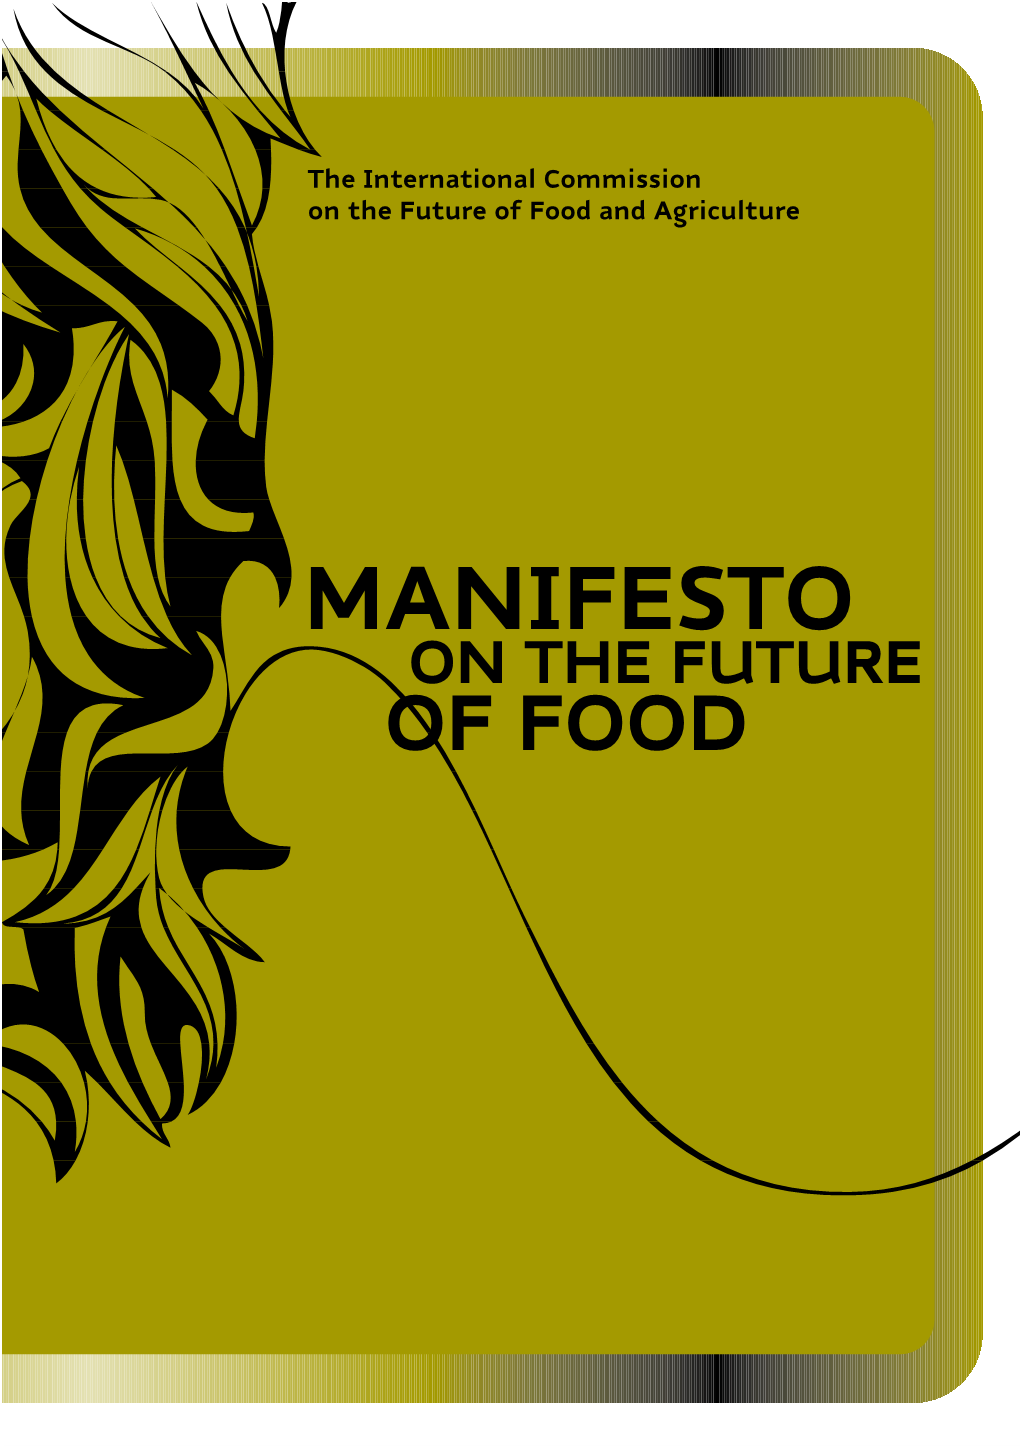 MANIFESTO on the FUTURE of FOOD MANIFESTO on the FUTURE of FOOD Produced by the International Commission on the Future of Food and Agriculture